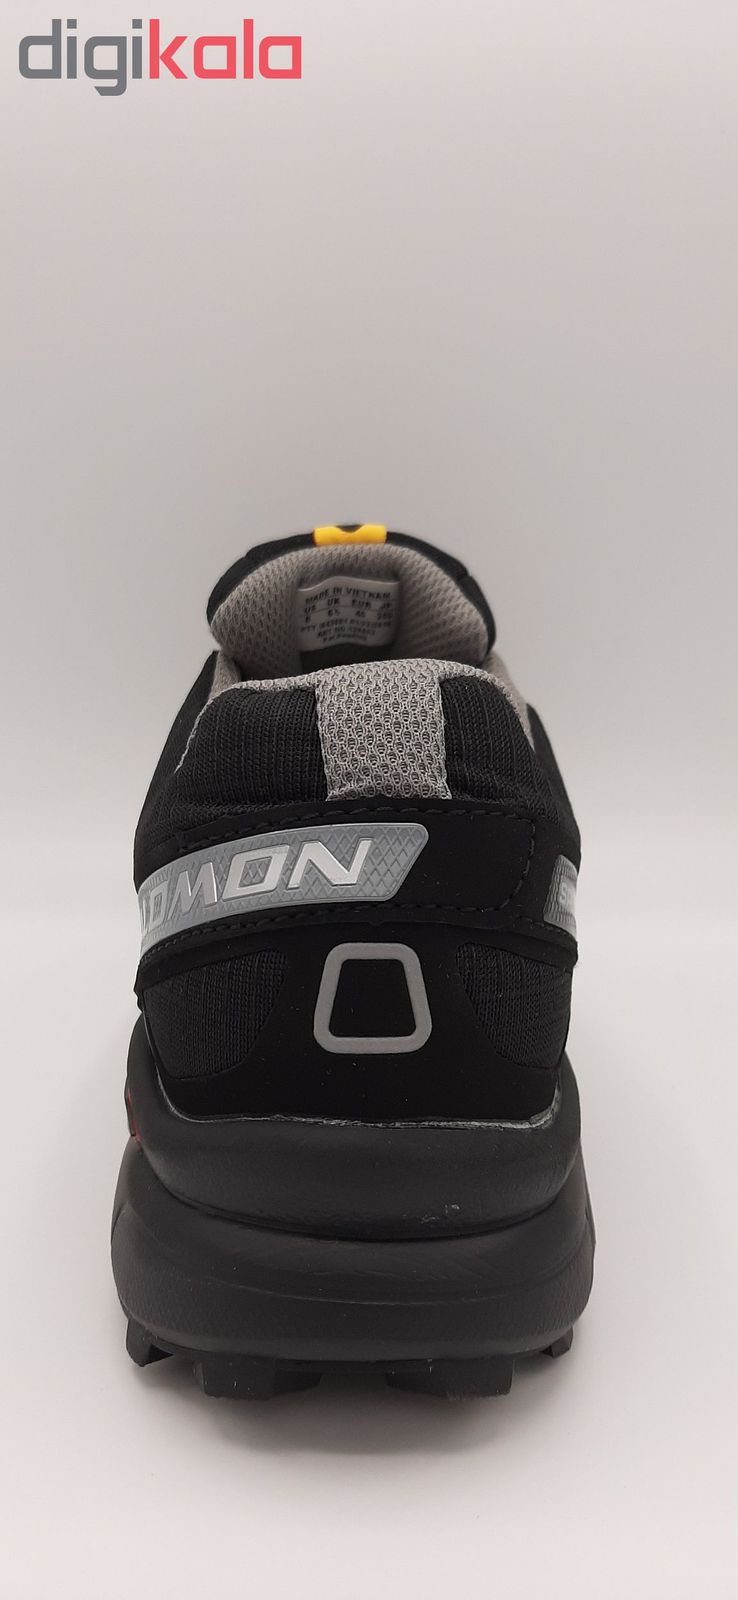 کفش مخصوص دویدن مردانه سالومون مدل Speedcross 3